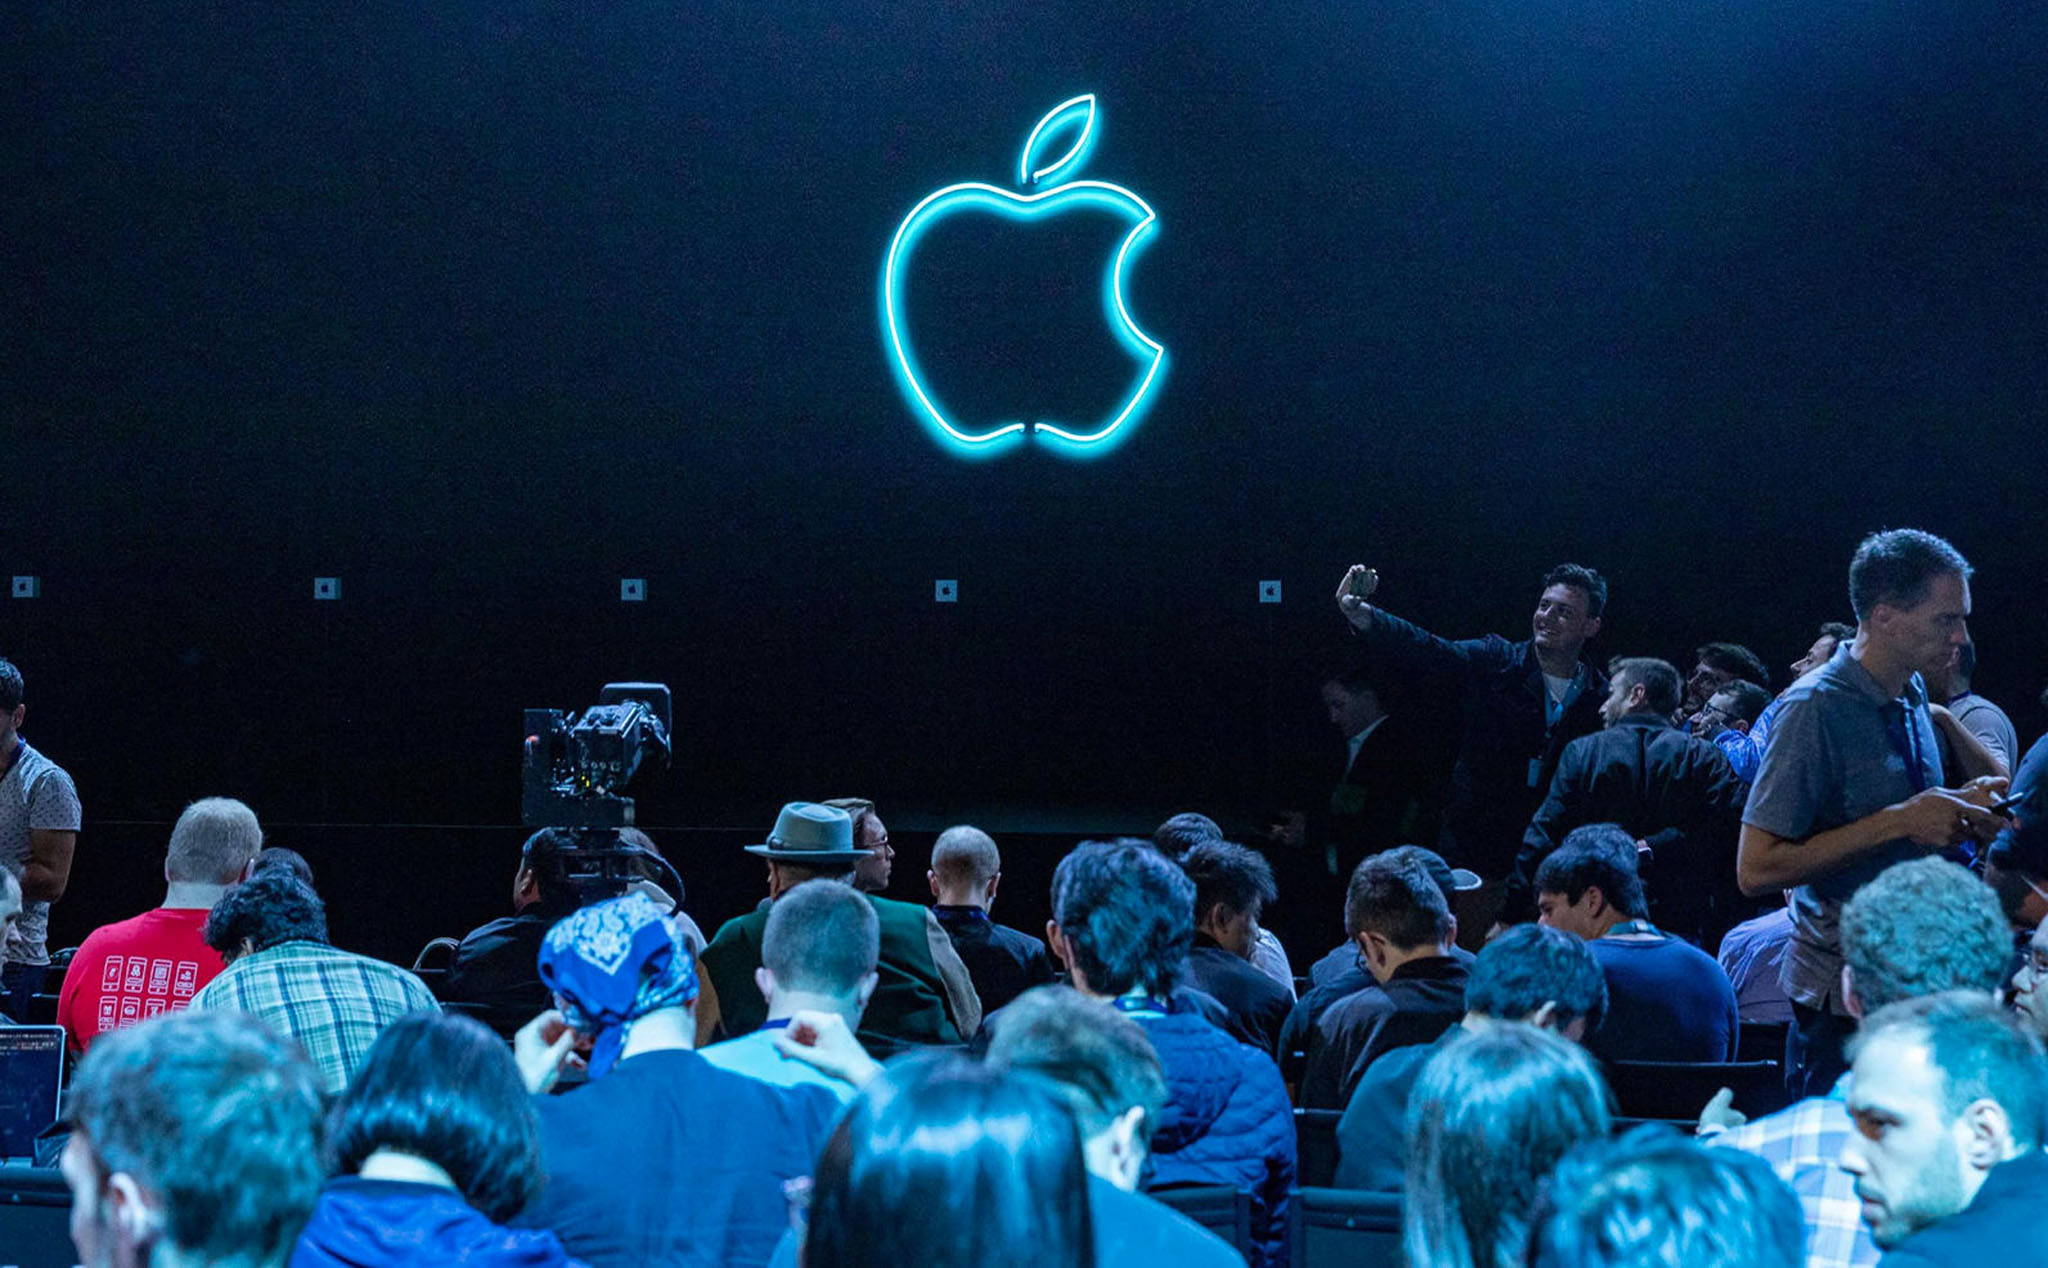 Chính quyền Santa Clara kêu gọi các hãng công nghệ hủy sự kiện, Apple liệu có hủy WWDC?